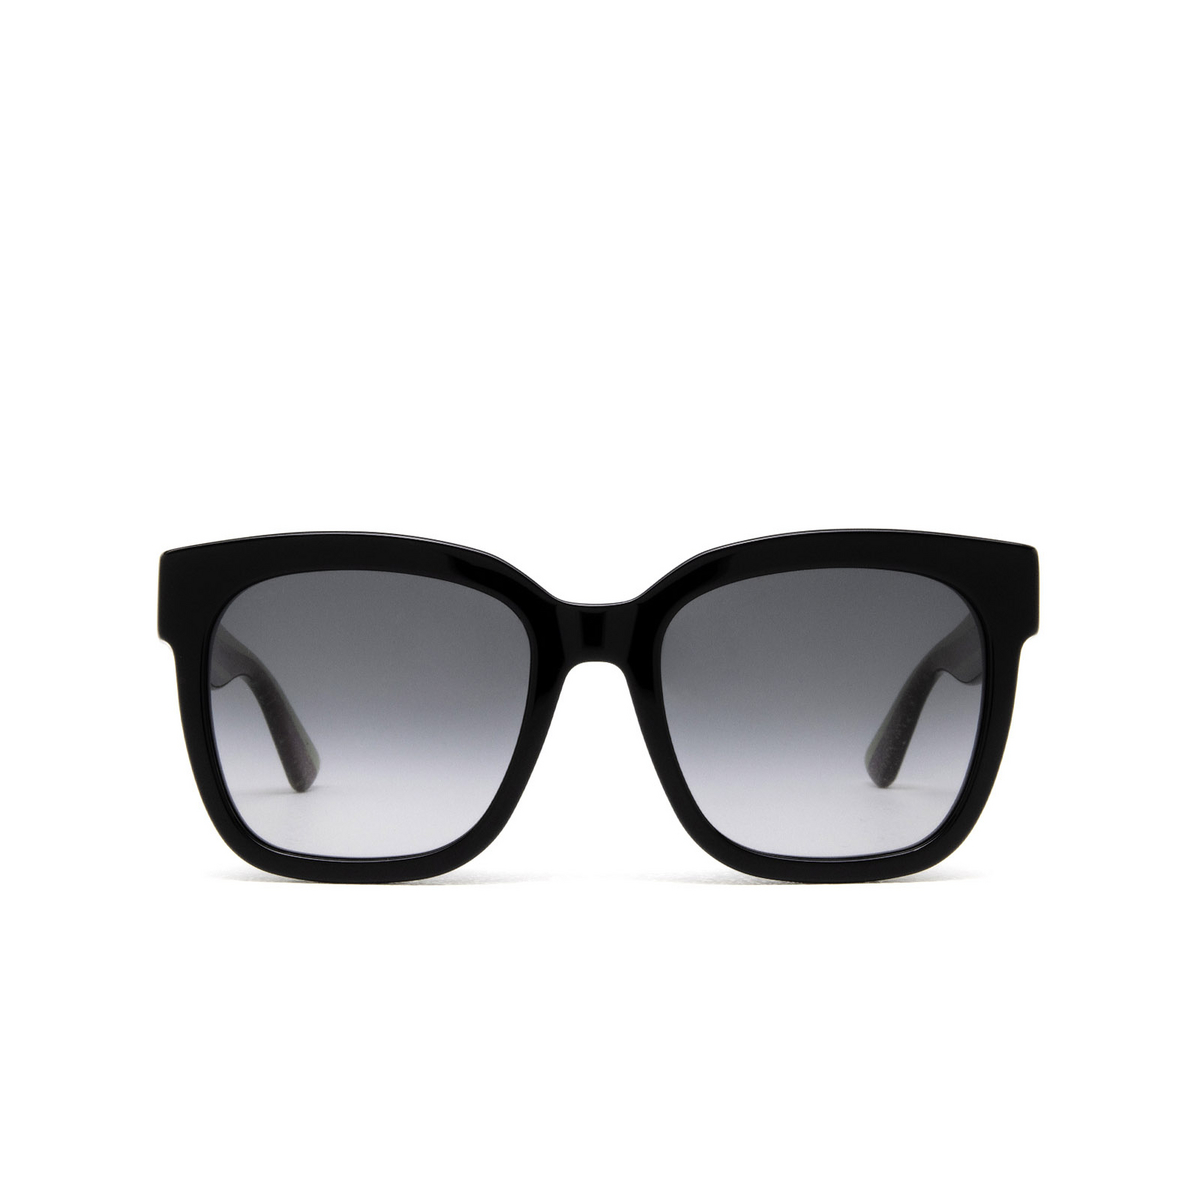 Gucci® Square Sunglasses: GG0034SN color Black 002 - front view.